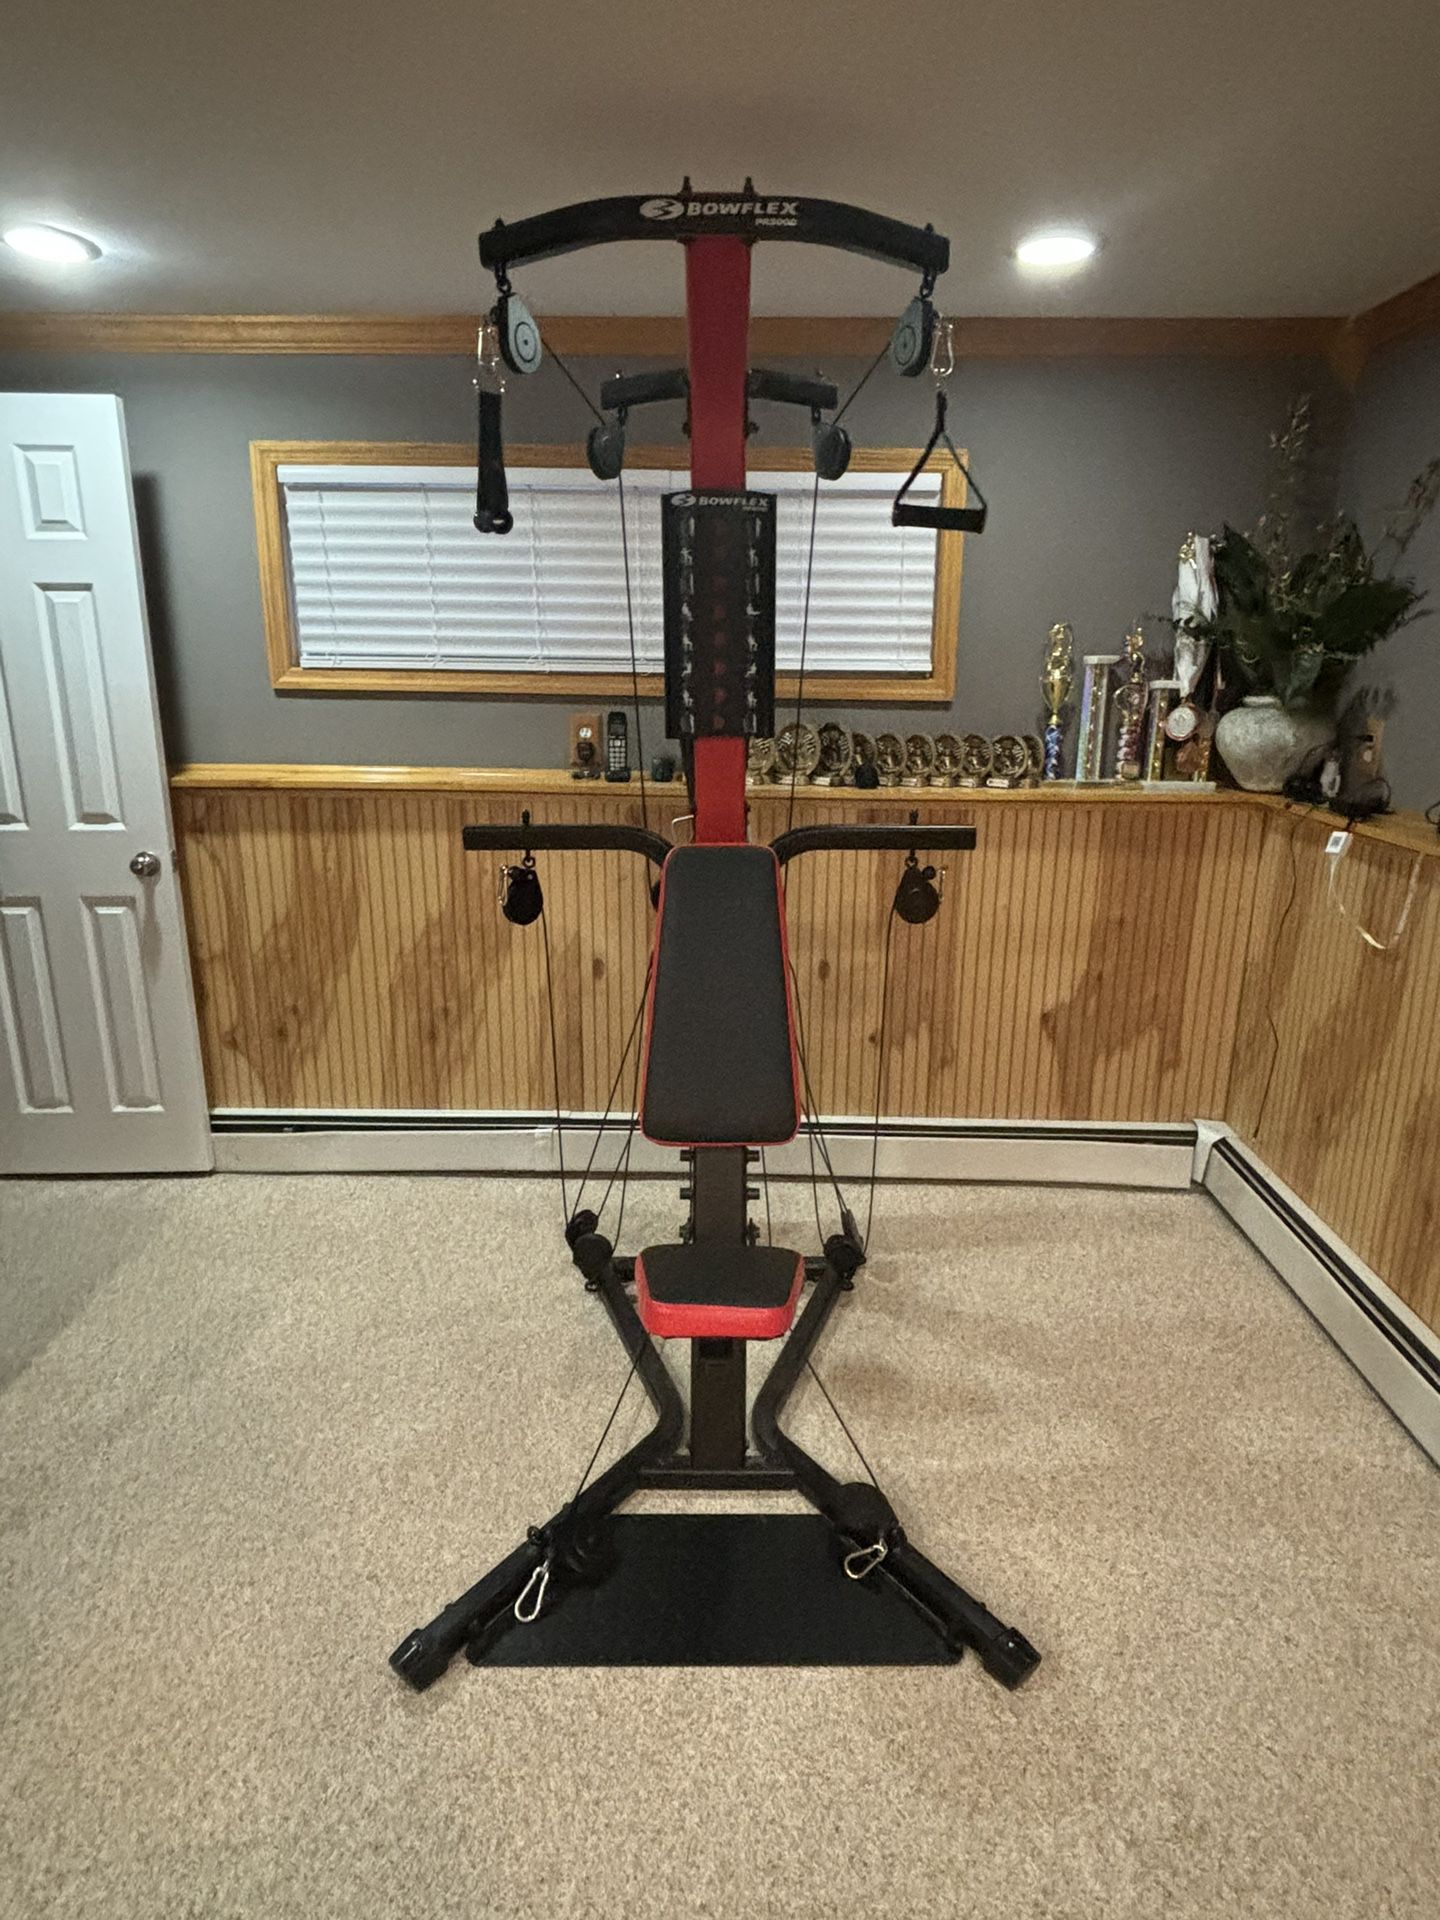 Bowflex PR 3000 Home Gym